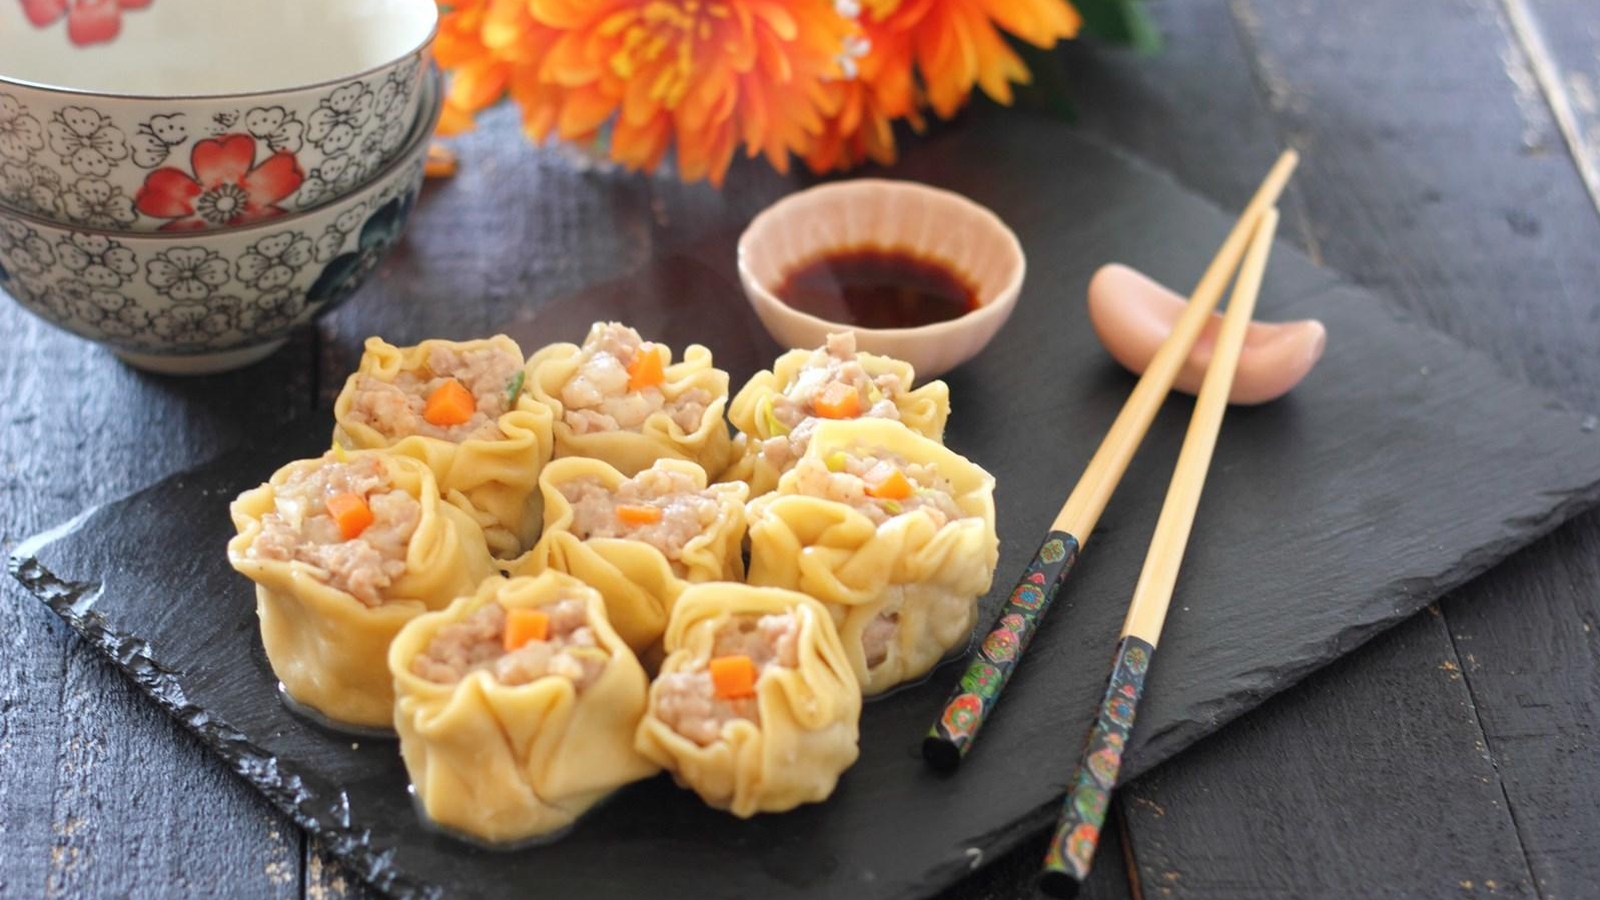 Cómo hacer dumplings chinos - Receta fácil